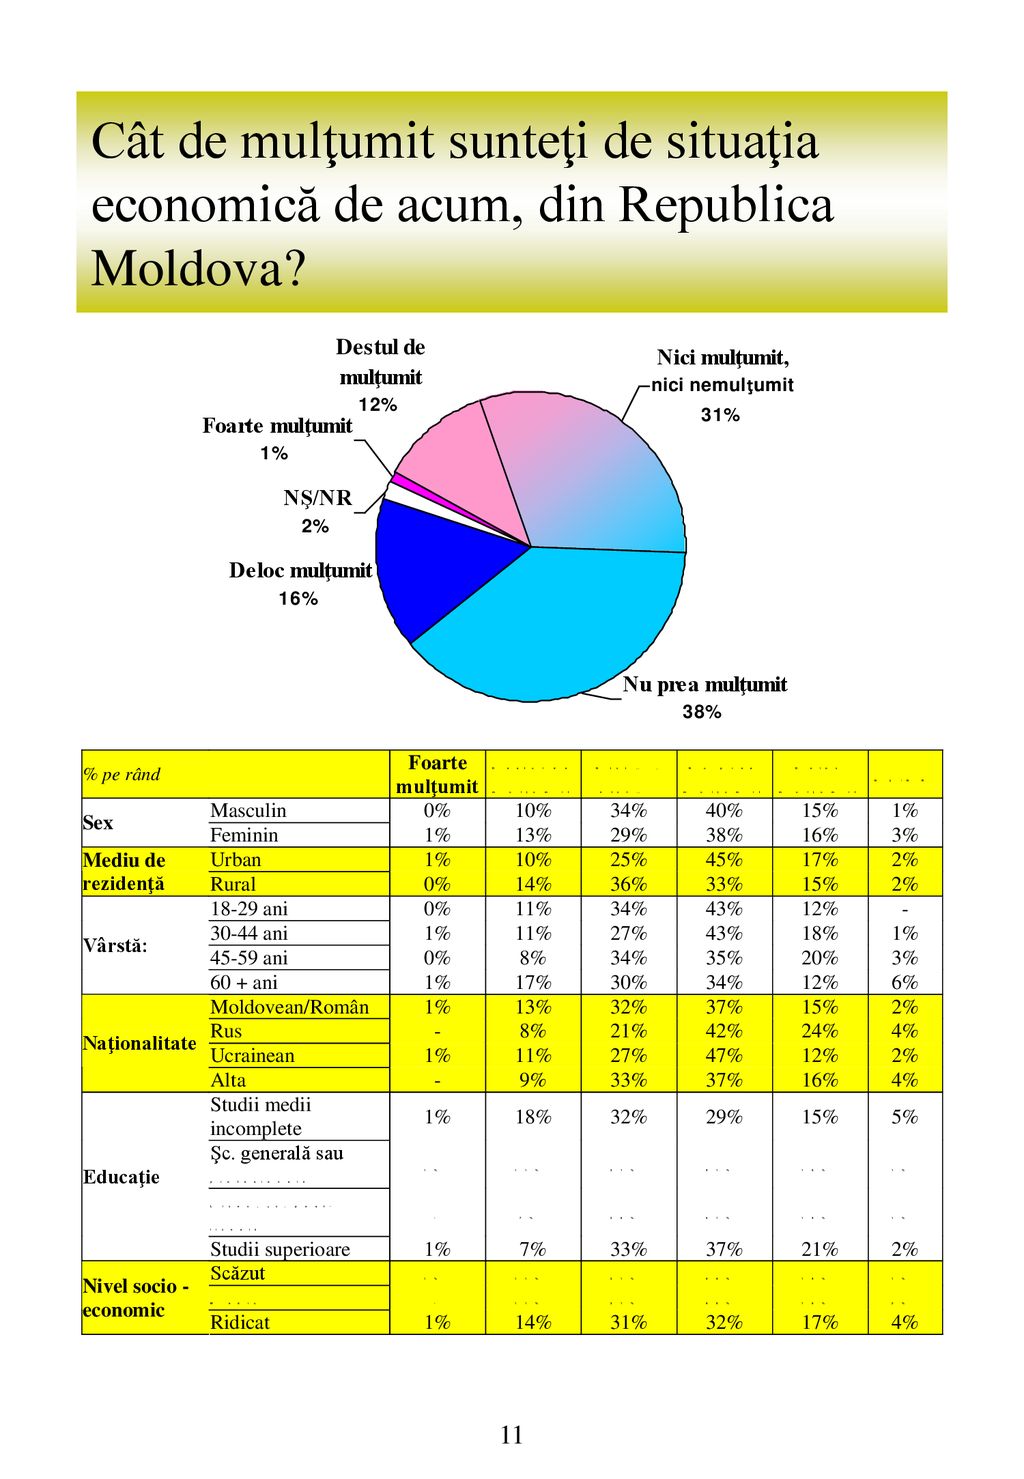 Cât de mulţumit sunteţi de situaţia economică de acum, din Republica Moldova